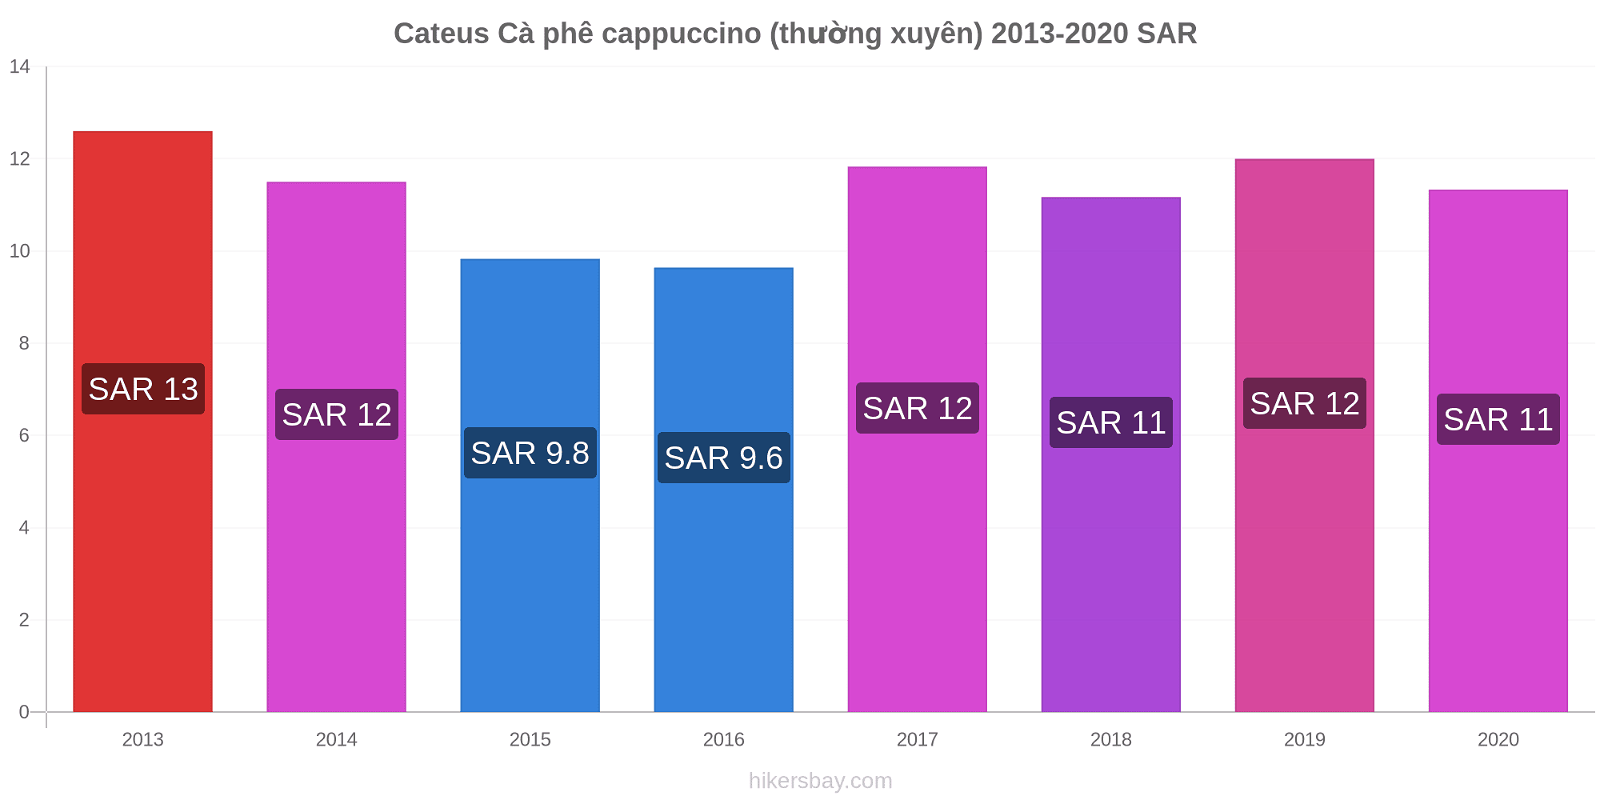 Cateus thay đổi giá Cà phê cappuccino (thường xuyên) hikersbay.com